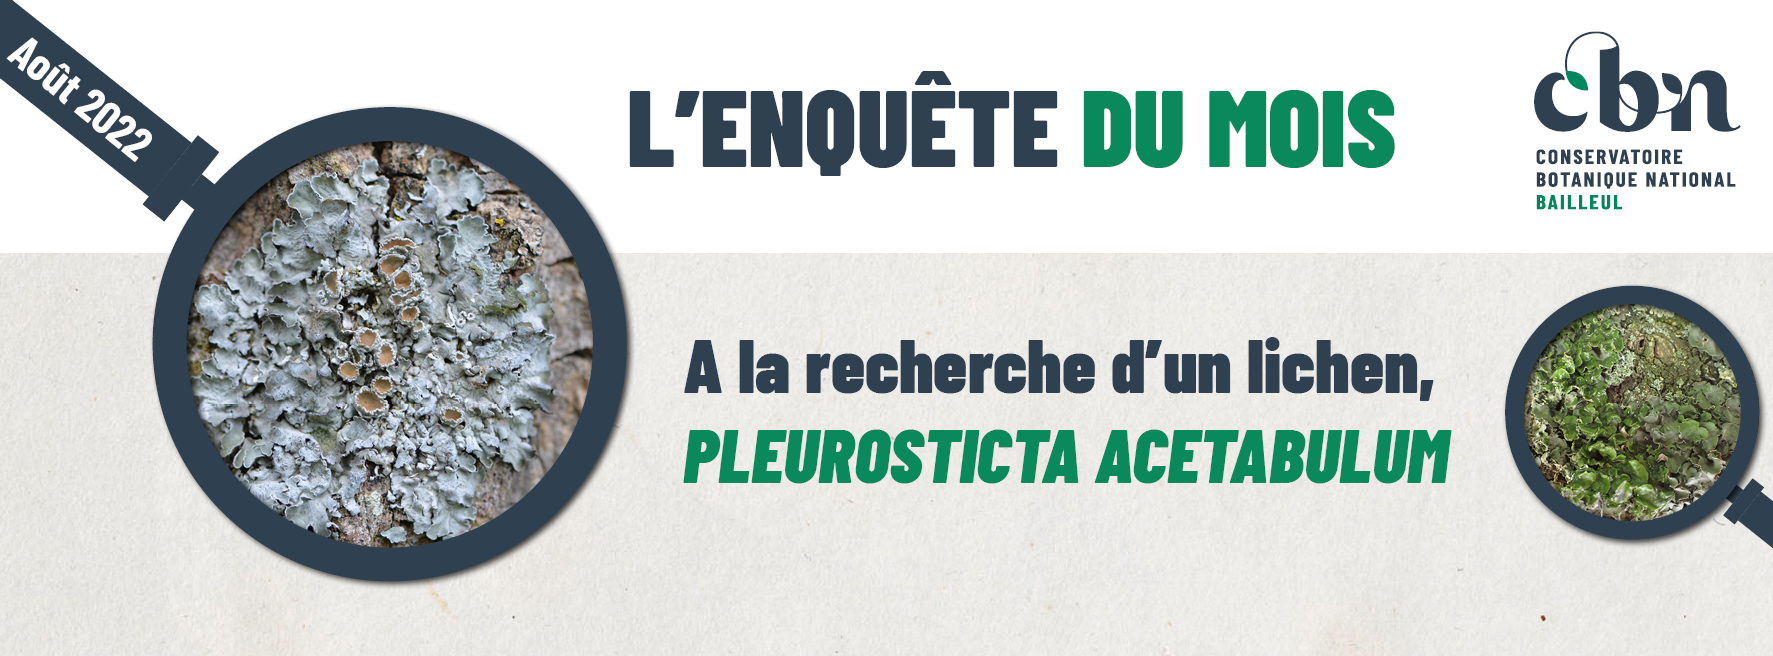 "L’enquête du mois : à la recherche d'un lichen ! Pleurosticta acetabulum"